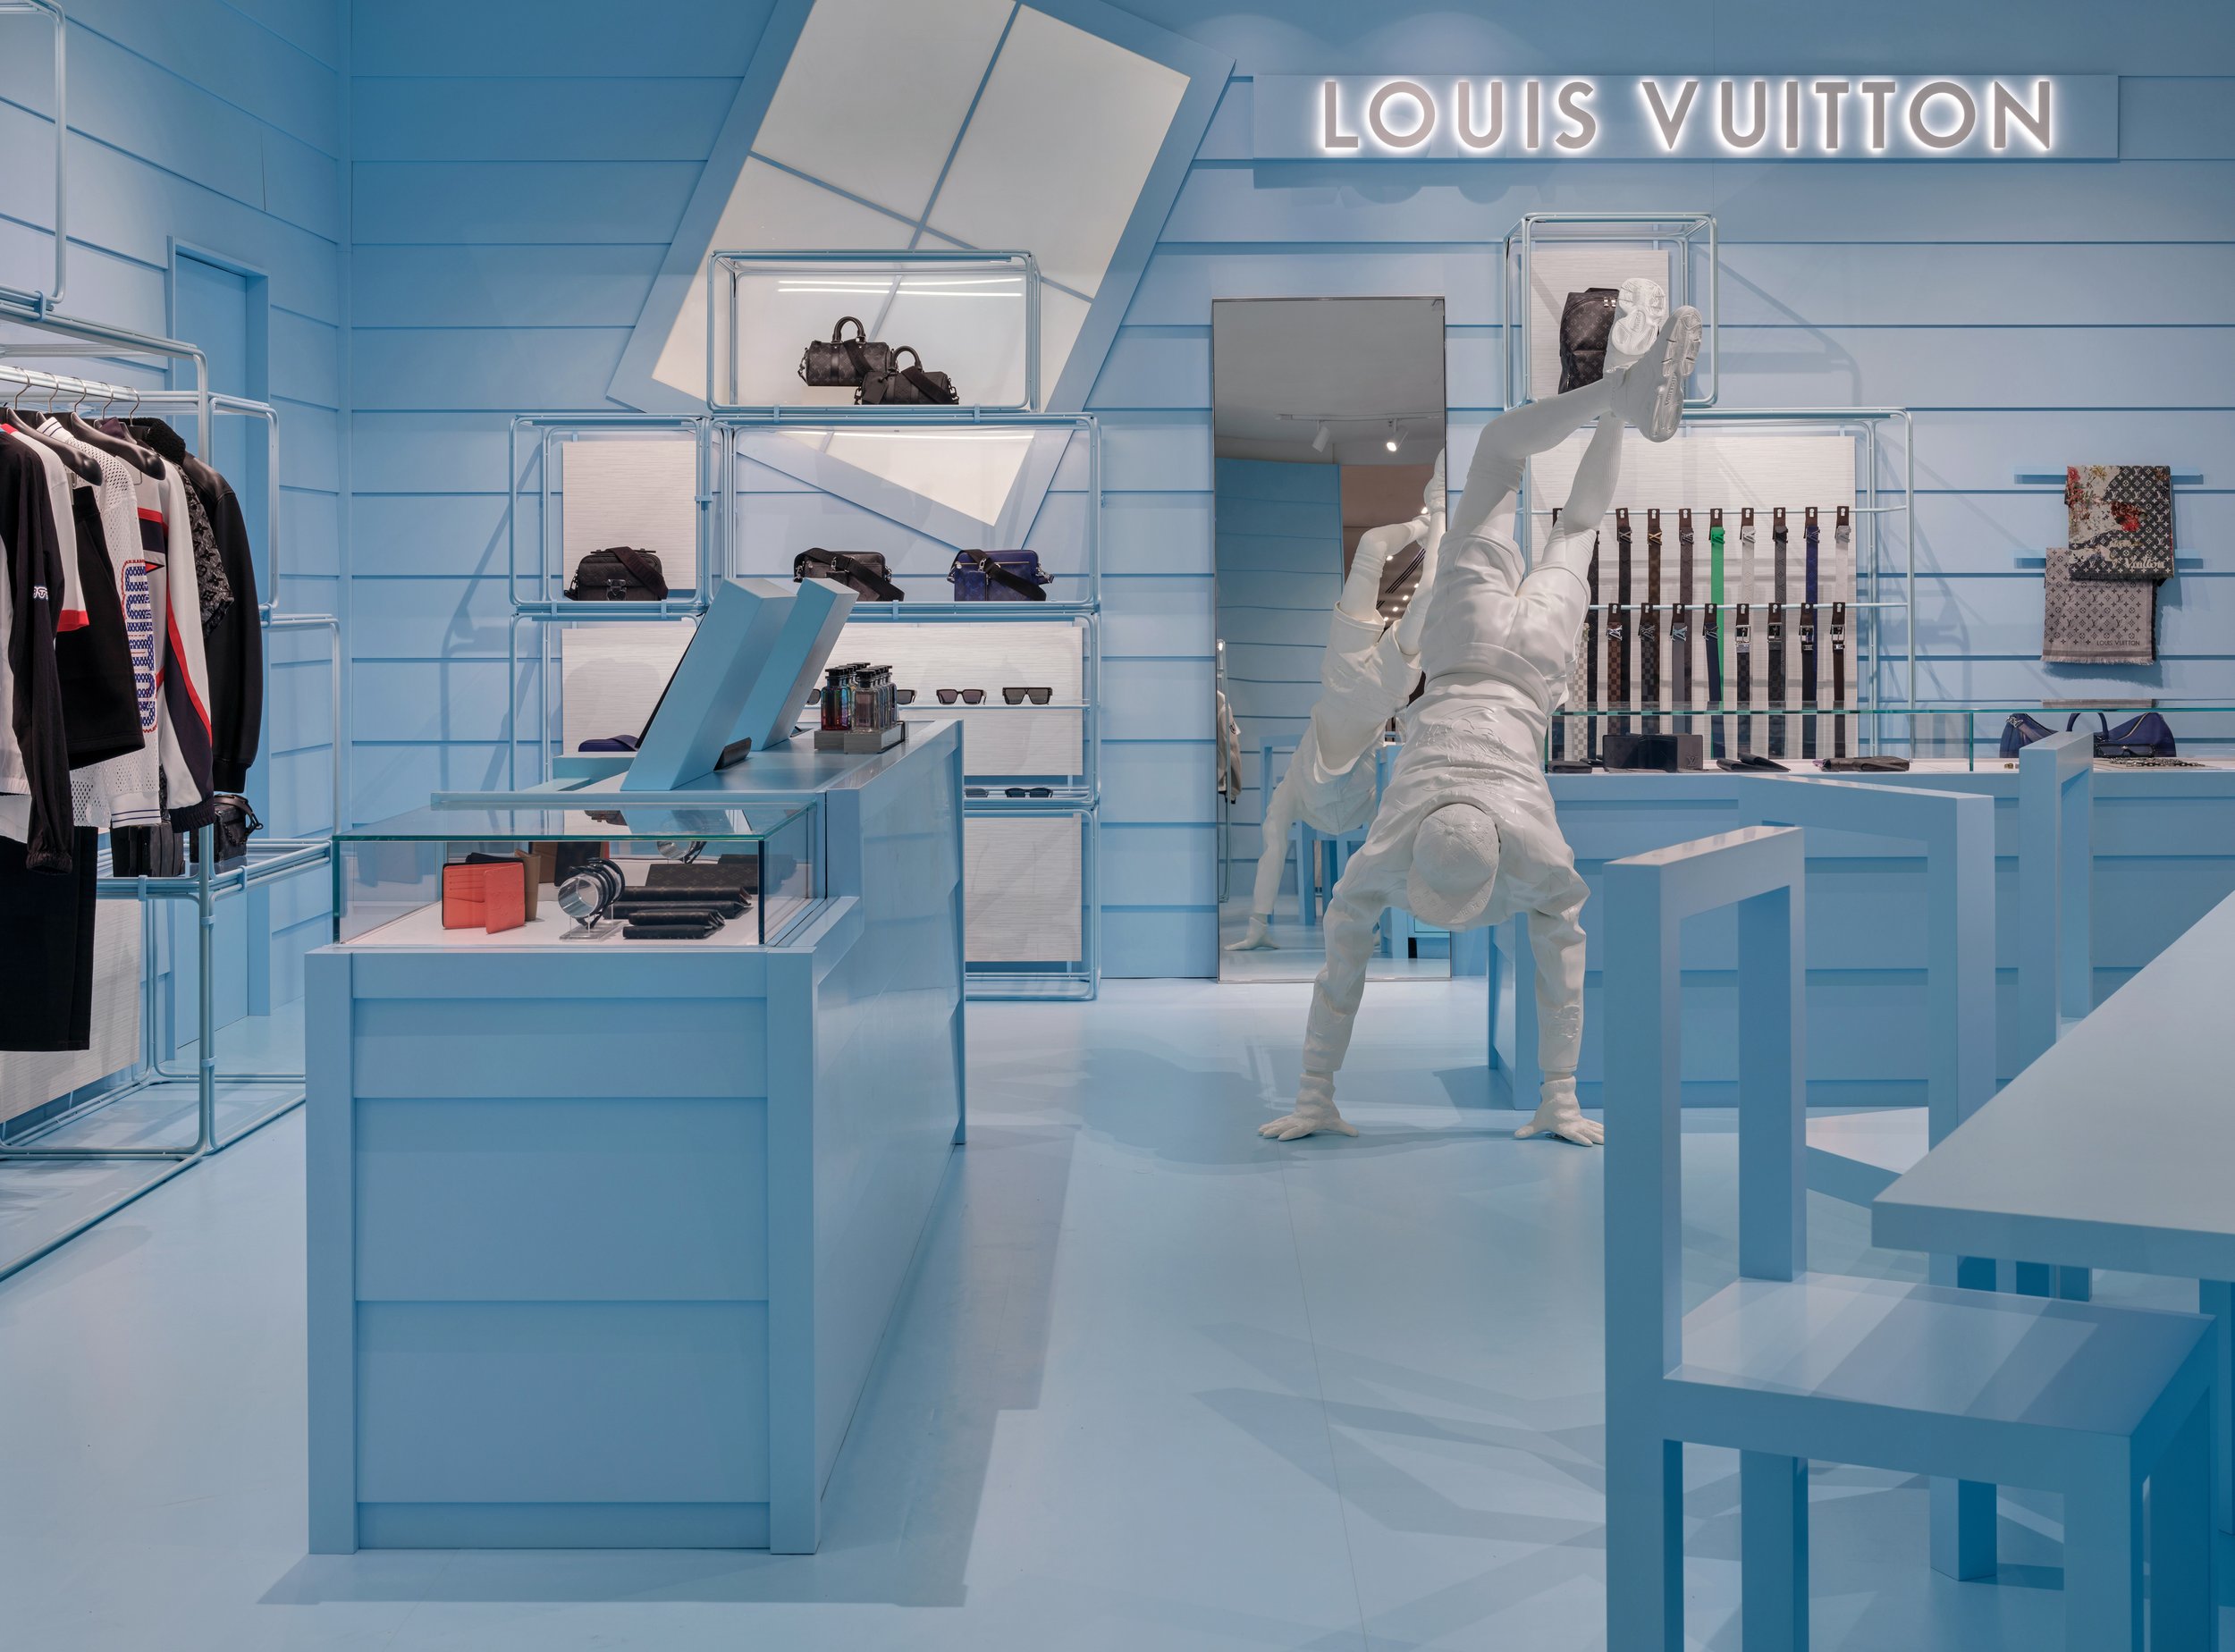 Louis Vuitton Manchester Selfridges store, United Kingdom